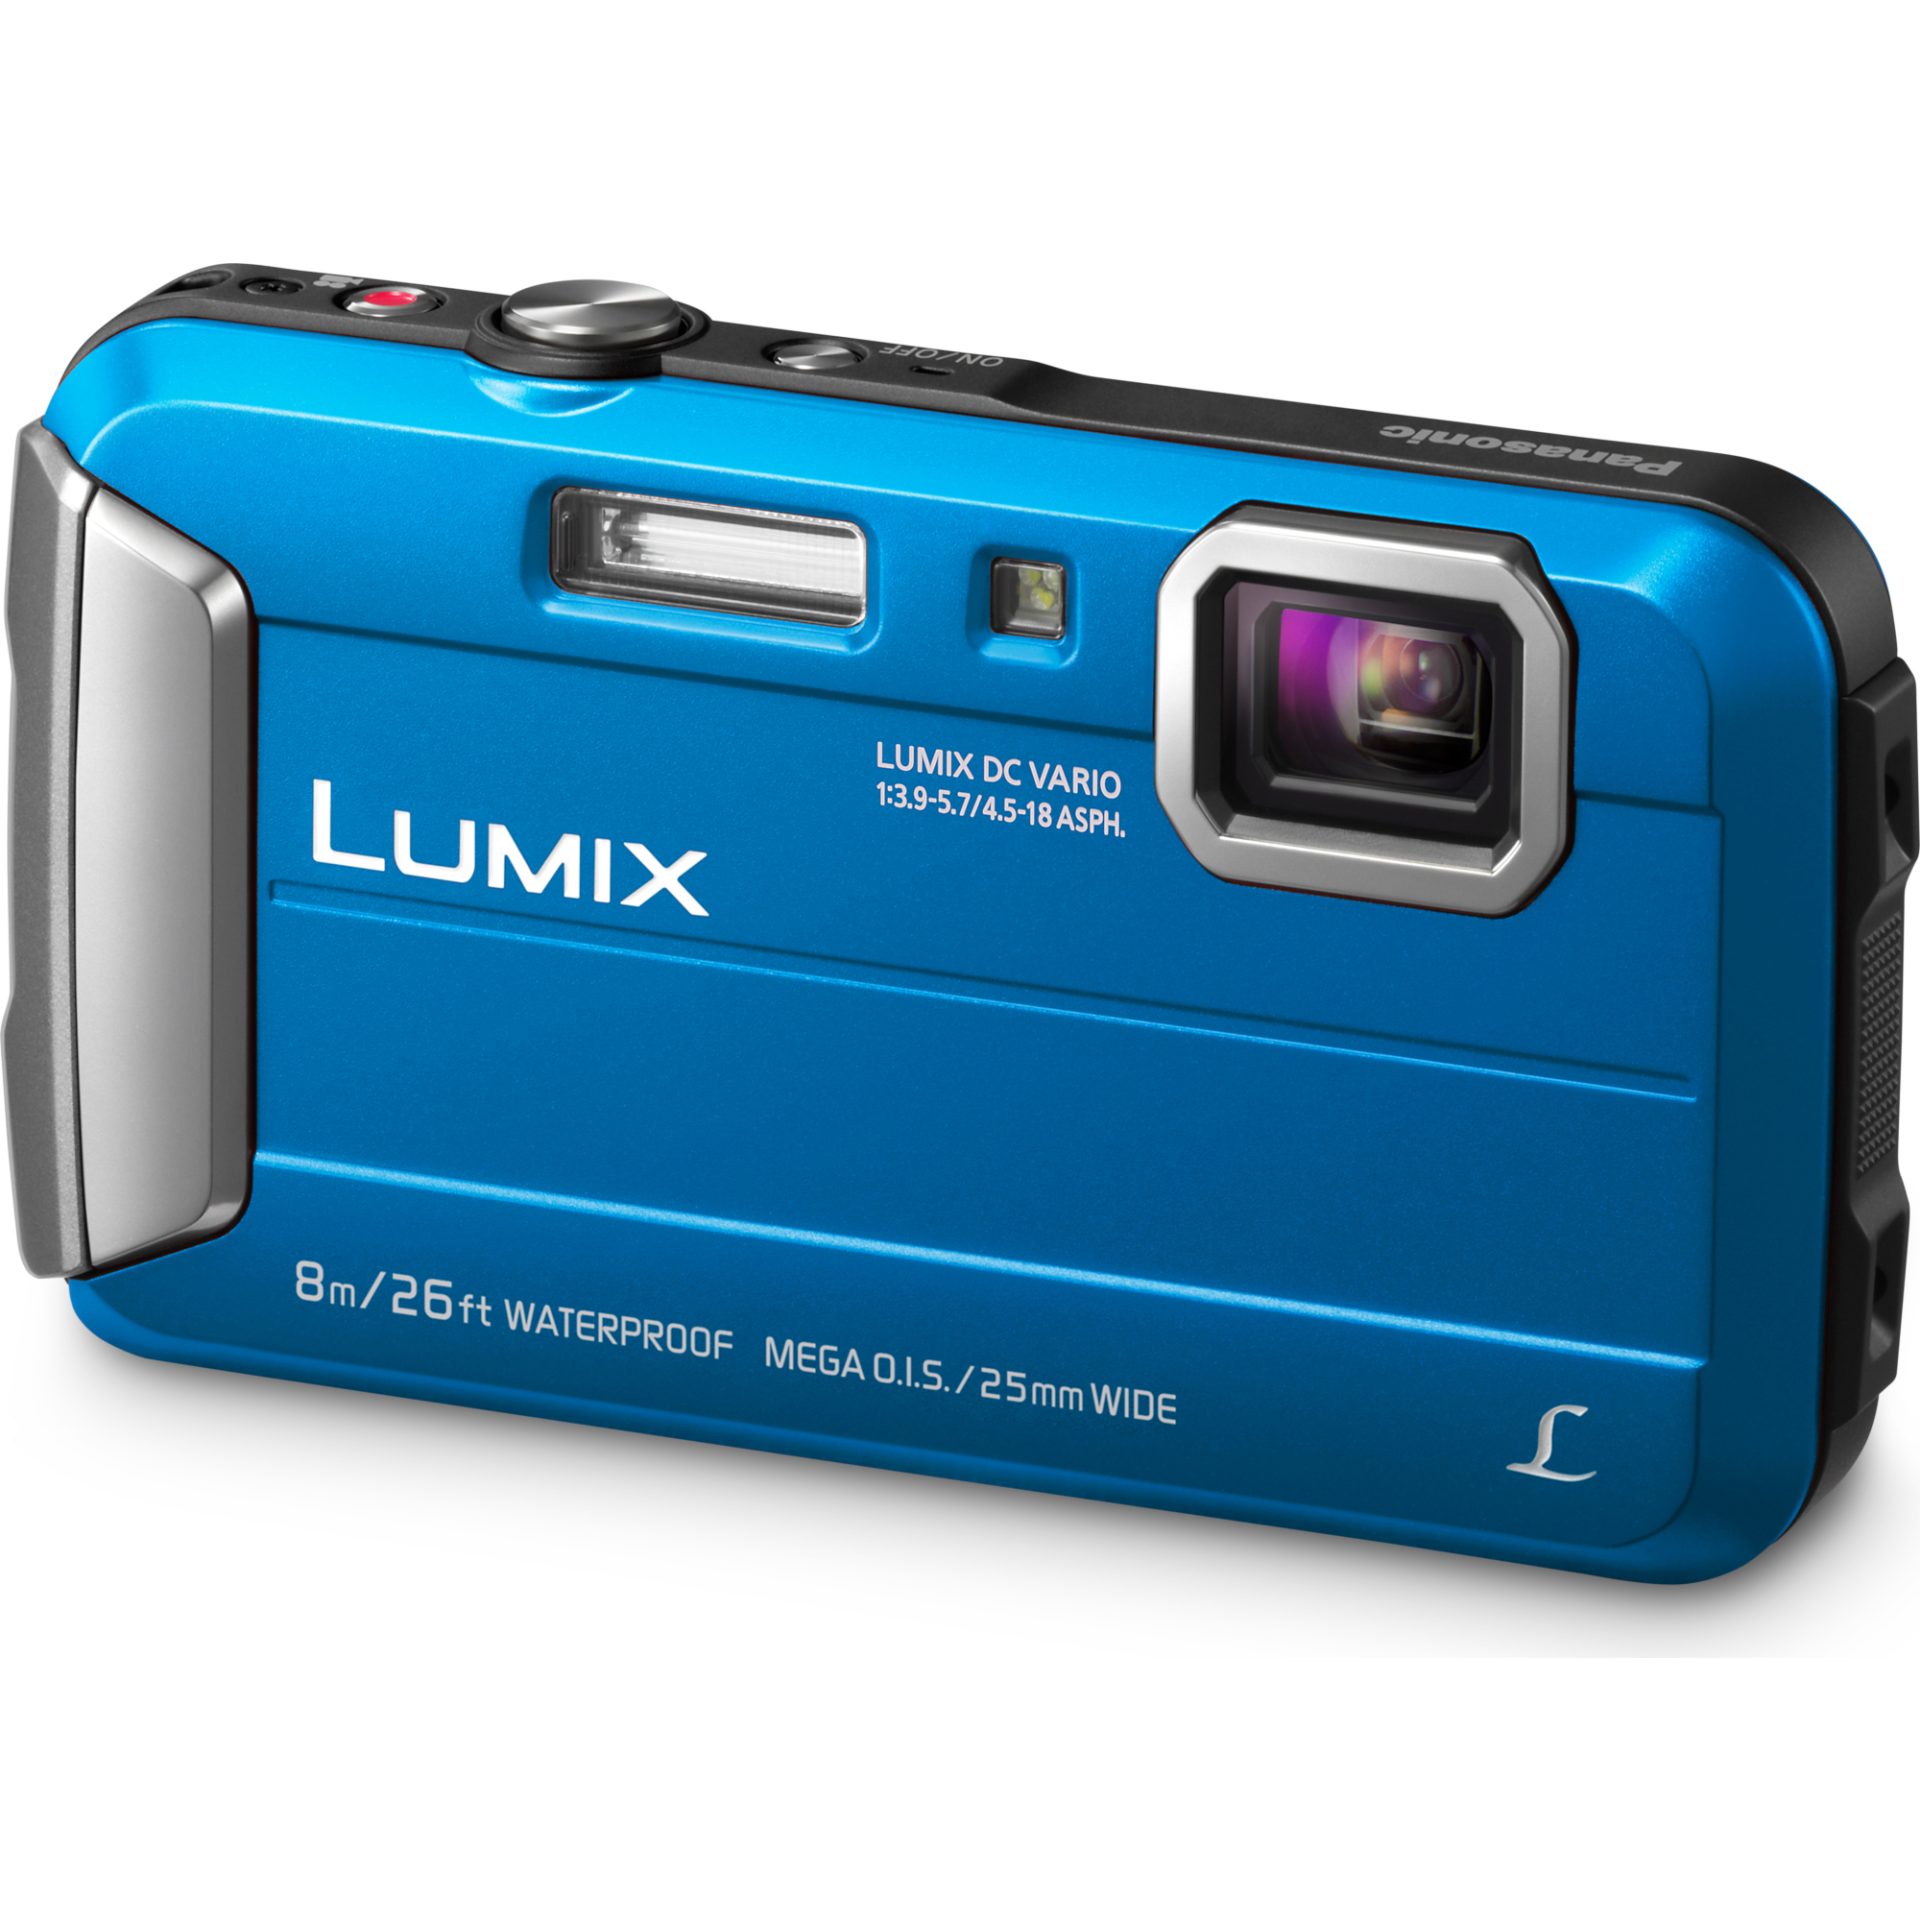 draagbaar toewijding Eed Panasonic DMC-FT30 Lumix kompaktní fotoaparát (vodotěsný až 8m,  nárazuvzdorný a mrazuvzdorný, 220MB paměť, mega O.I.S., MP4 HD video),  modrá » Značkový obchod Panasonic